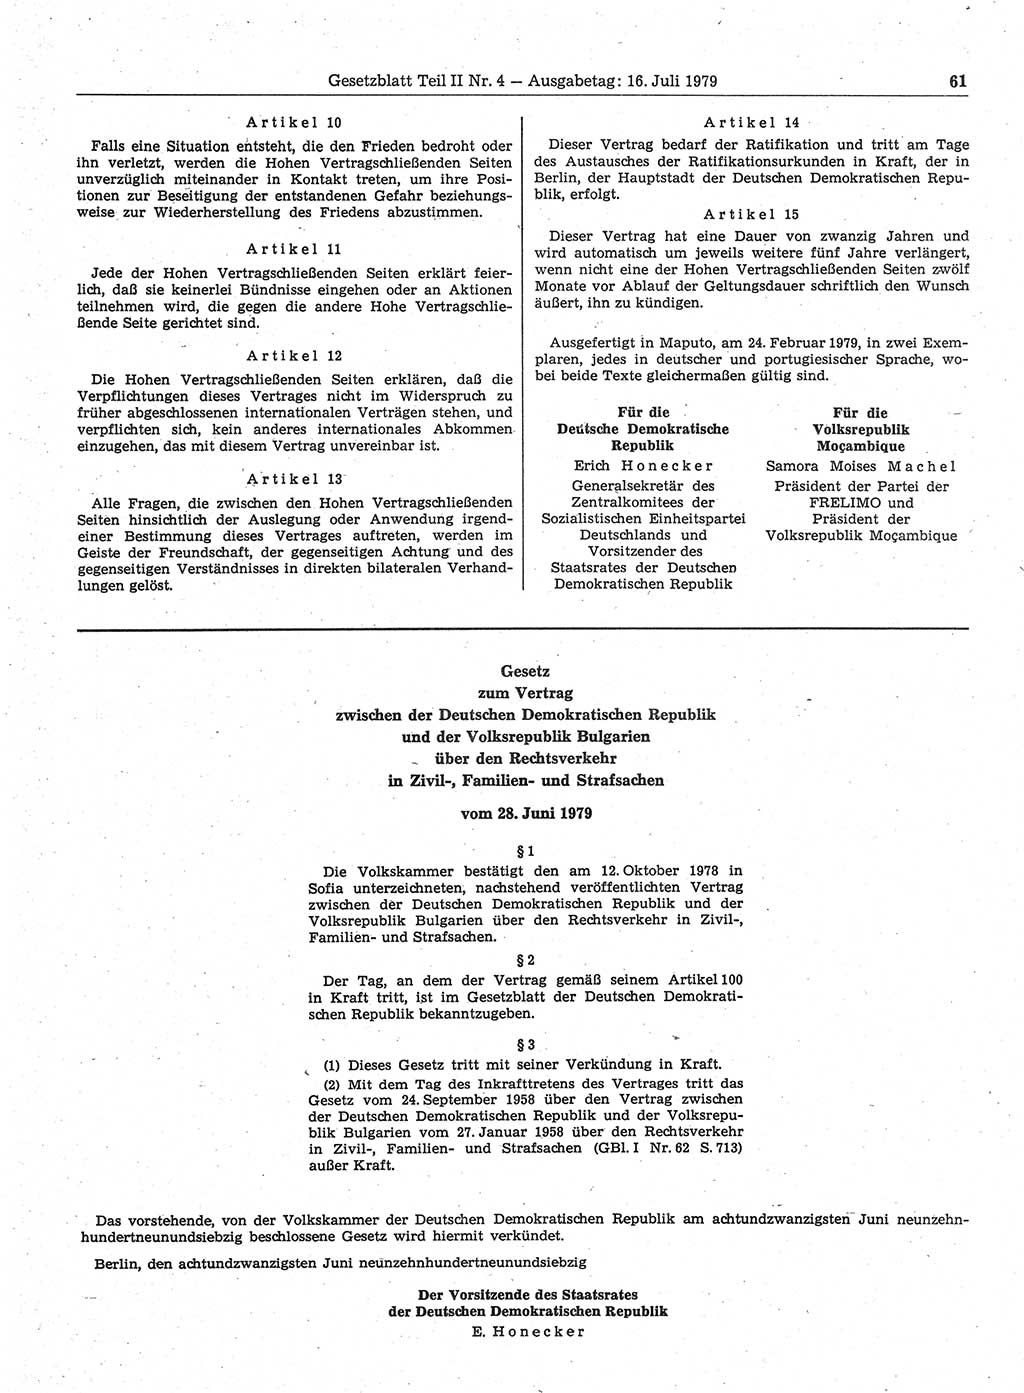 Gesetzblatt (GBl.) der Deutschen Demokratischen Republik (DDR) Teil ⅠⅠ 1979, Seite 61 (GBl. DDR ⅠⅠ 1979, S. 61)